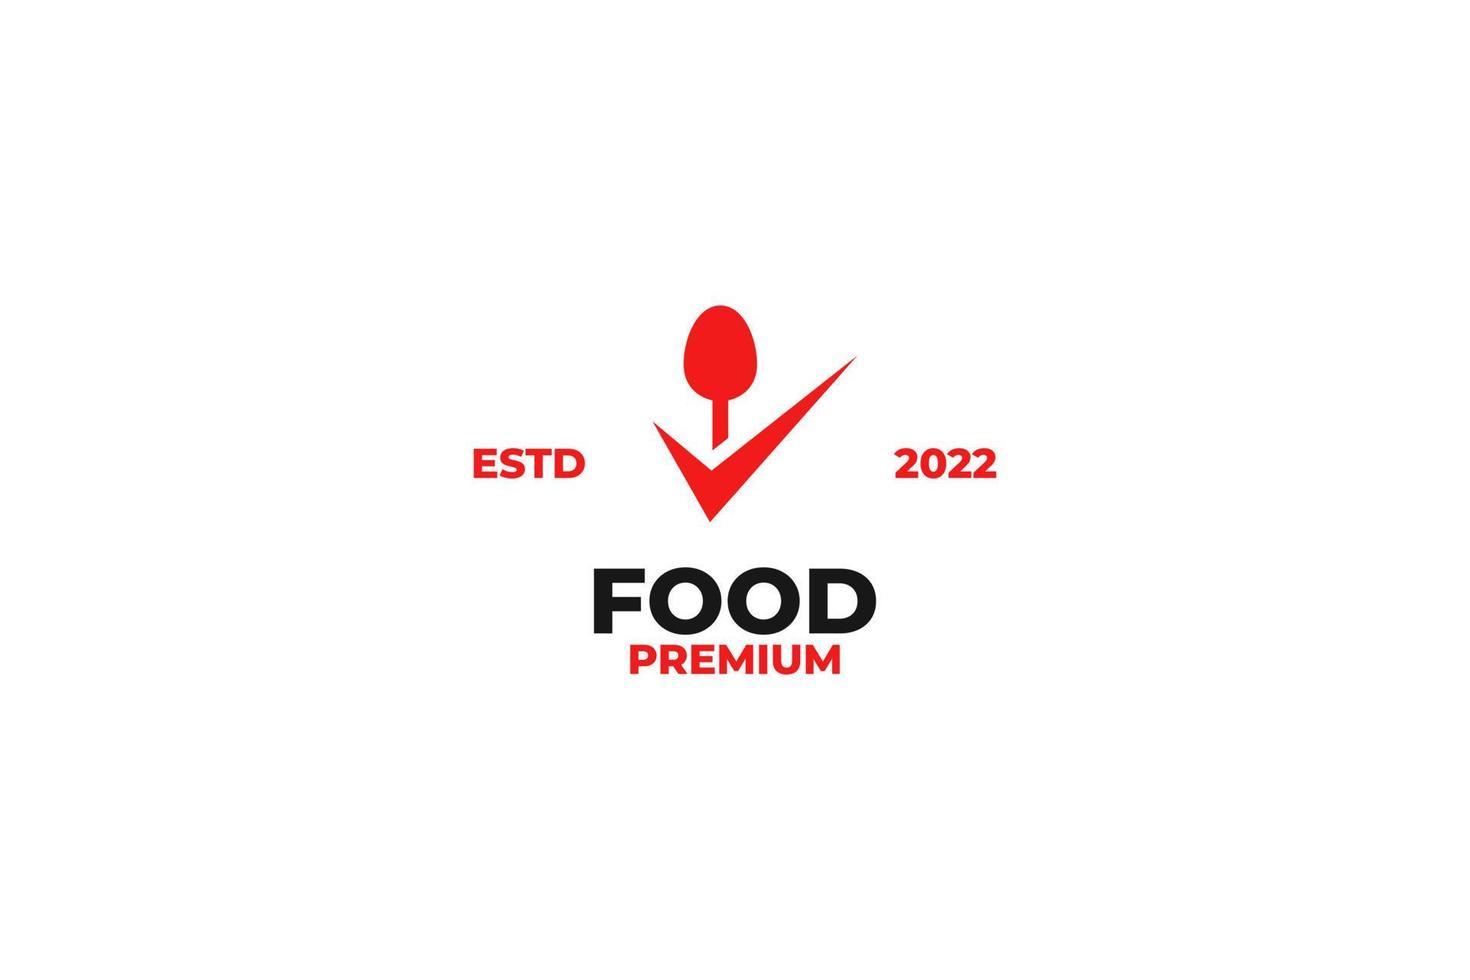 vlak voedsel controleren logo ontwerp vector illustratie